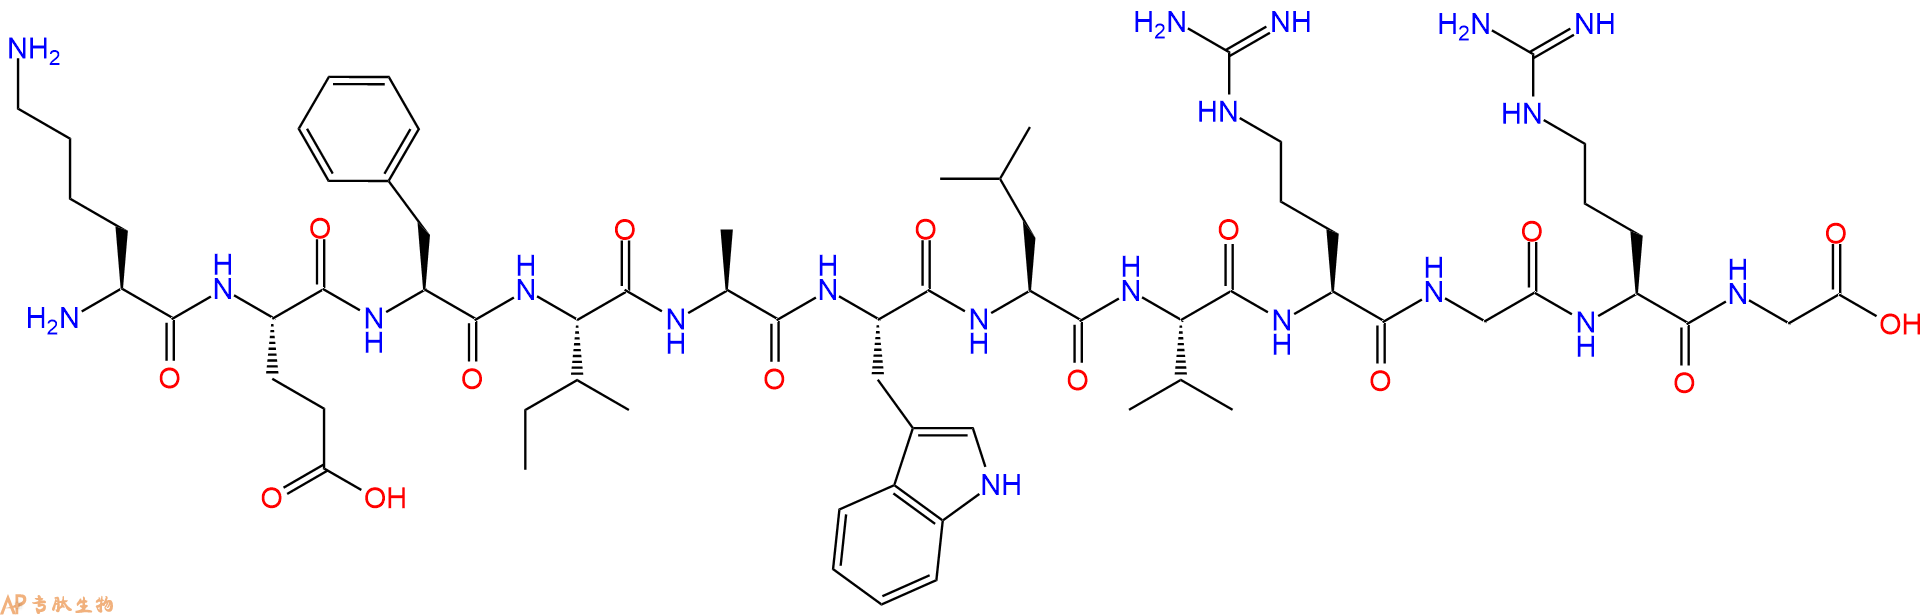 专肽生物产品十二肽KEFIAWLVRGRG